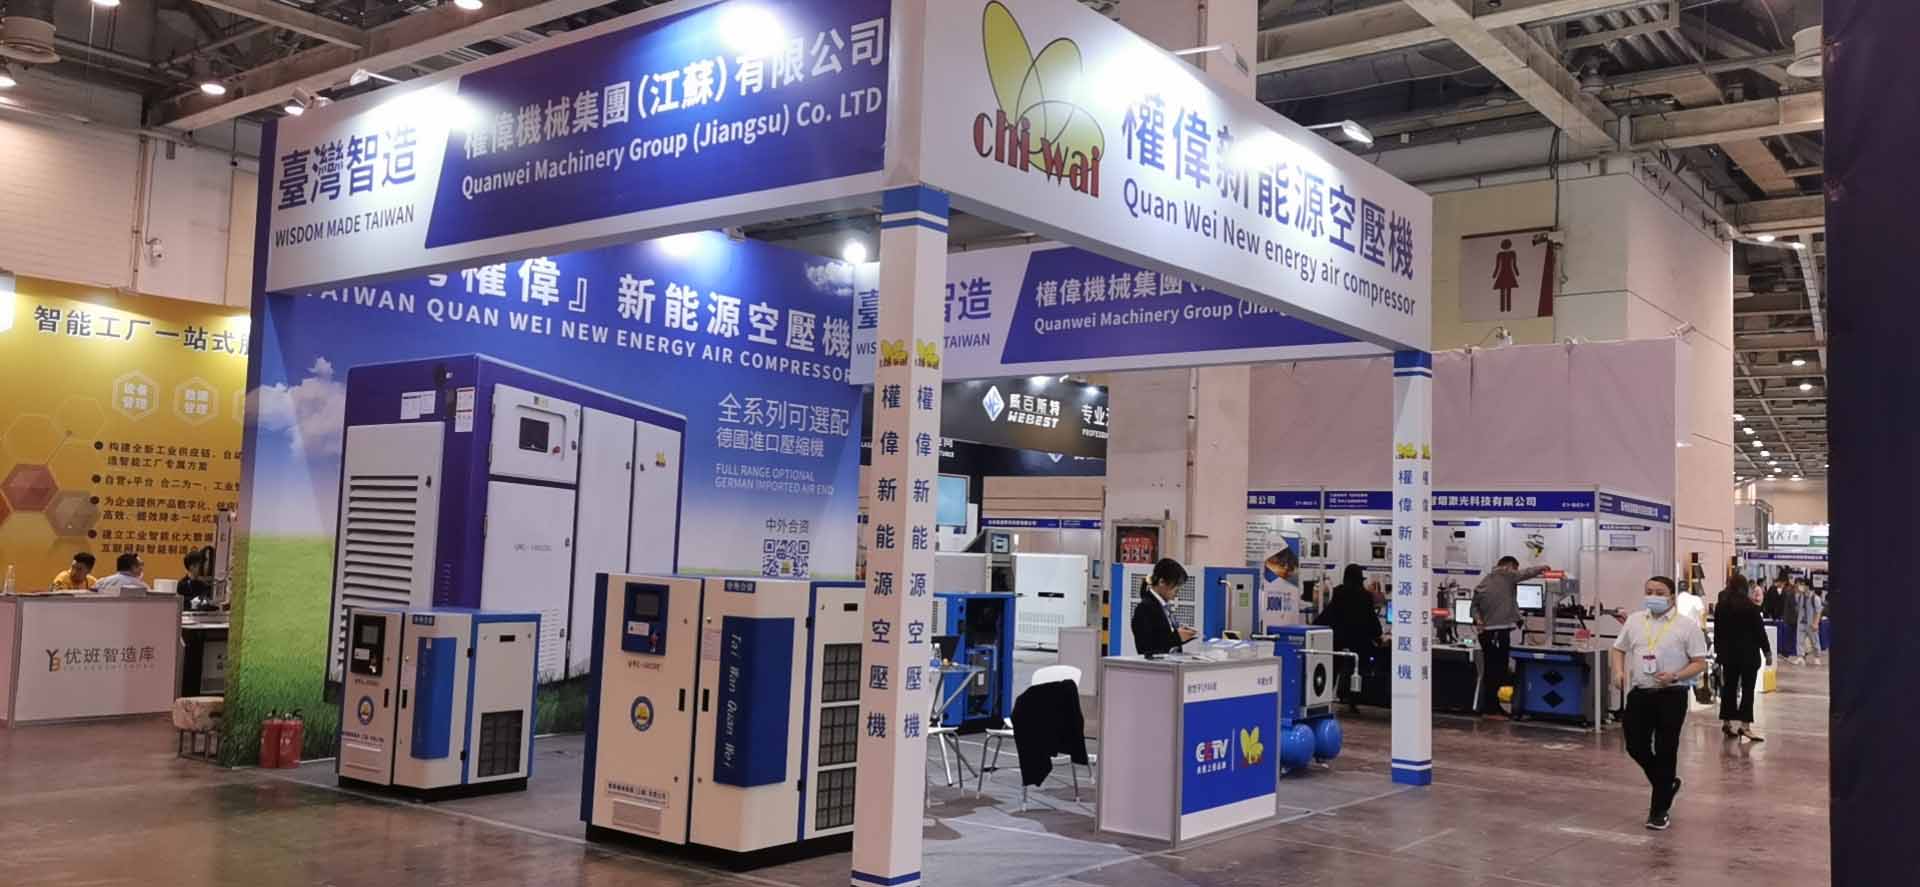 台湾权伟节能螺杆空压机参加IIE 2020国际工业智能展览会